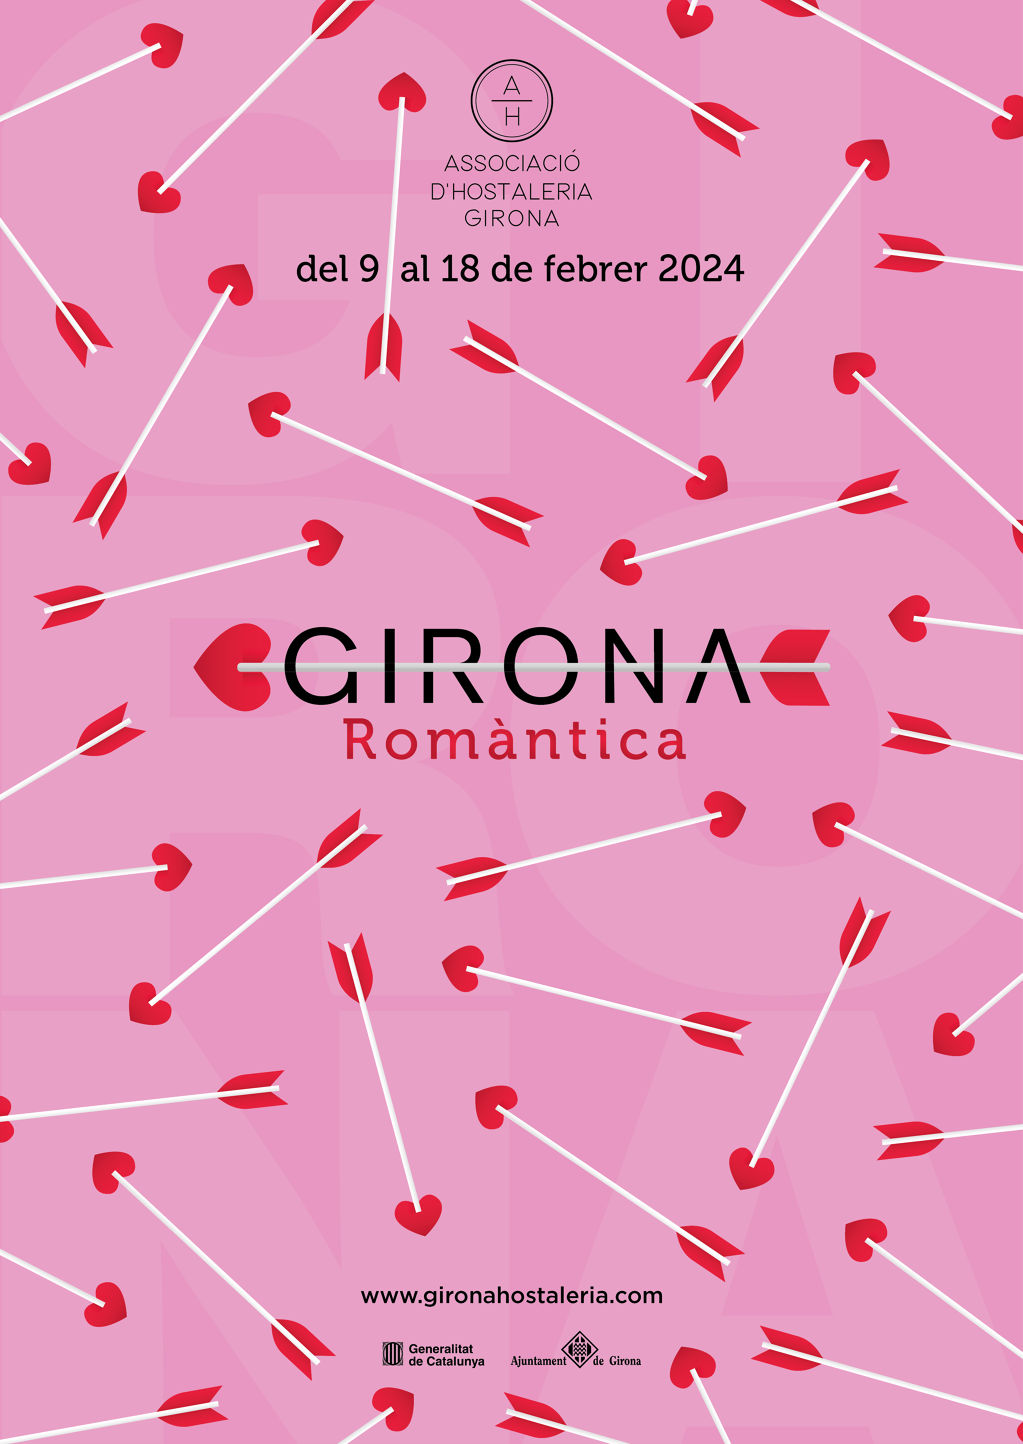 Girona Romántica 2024